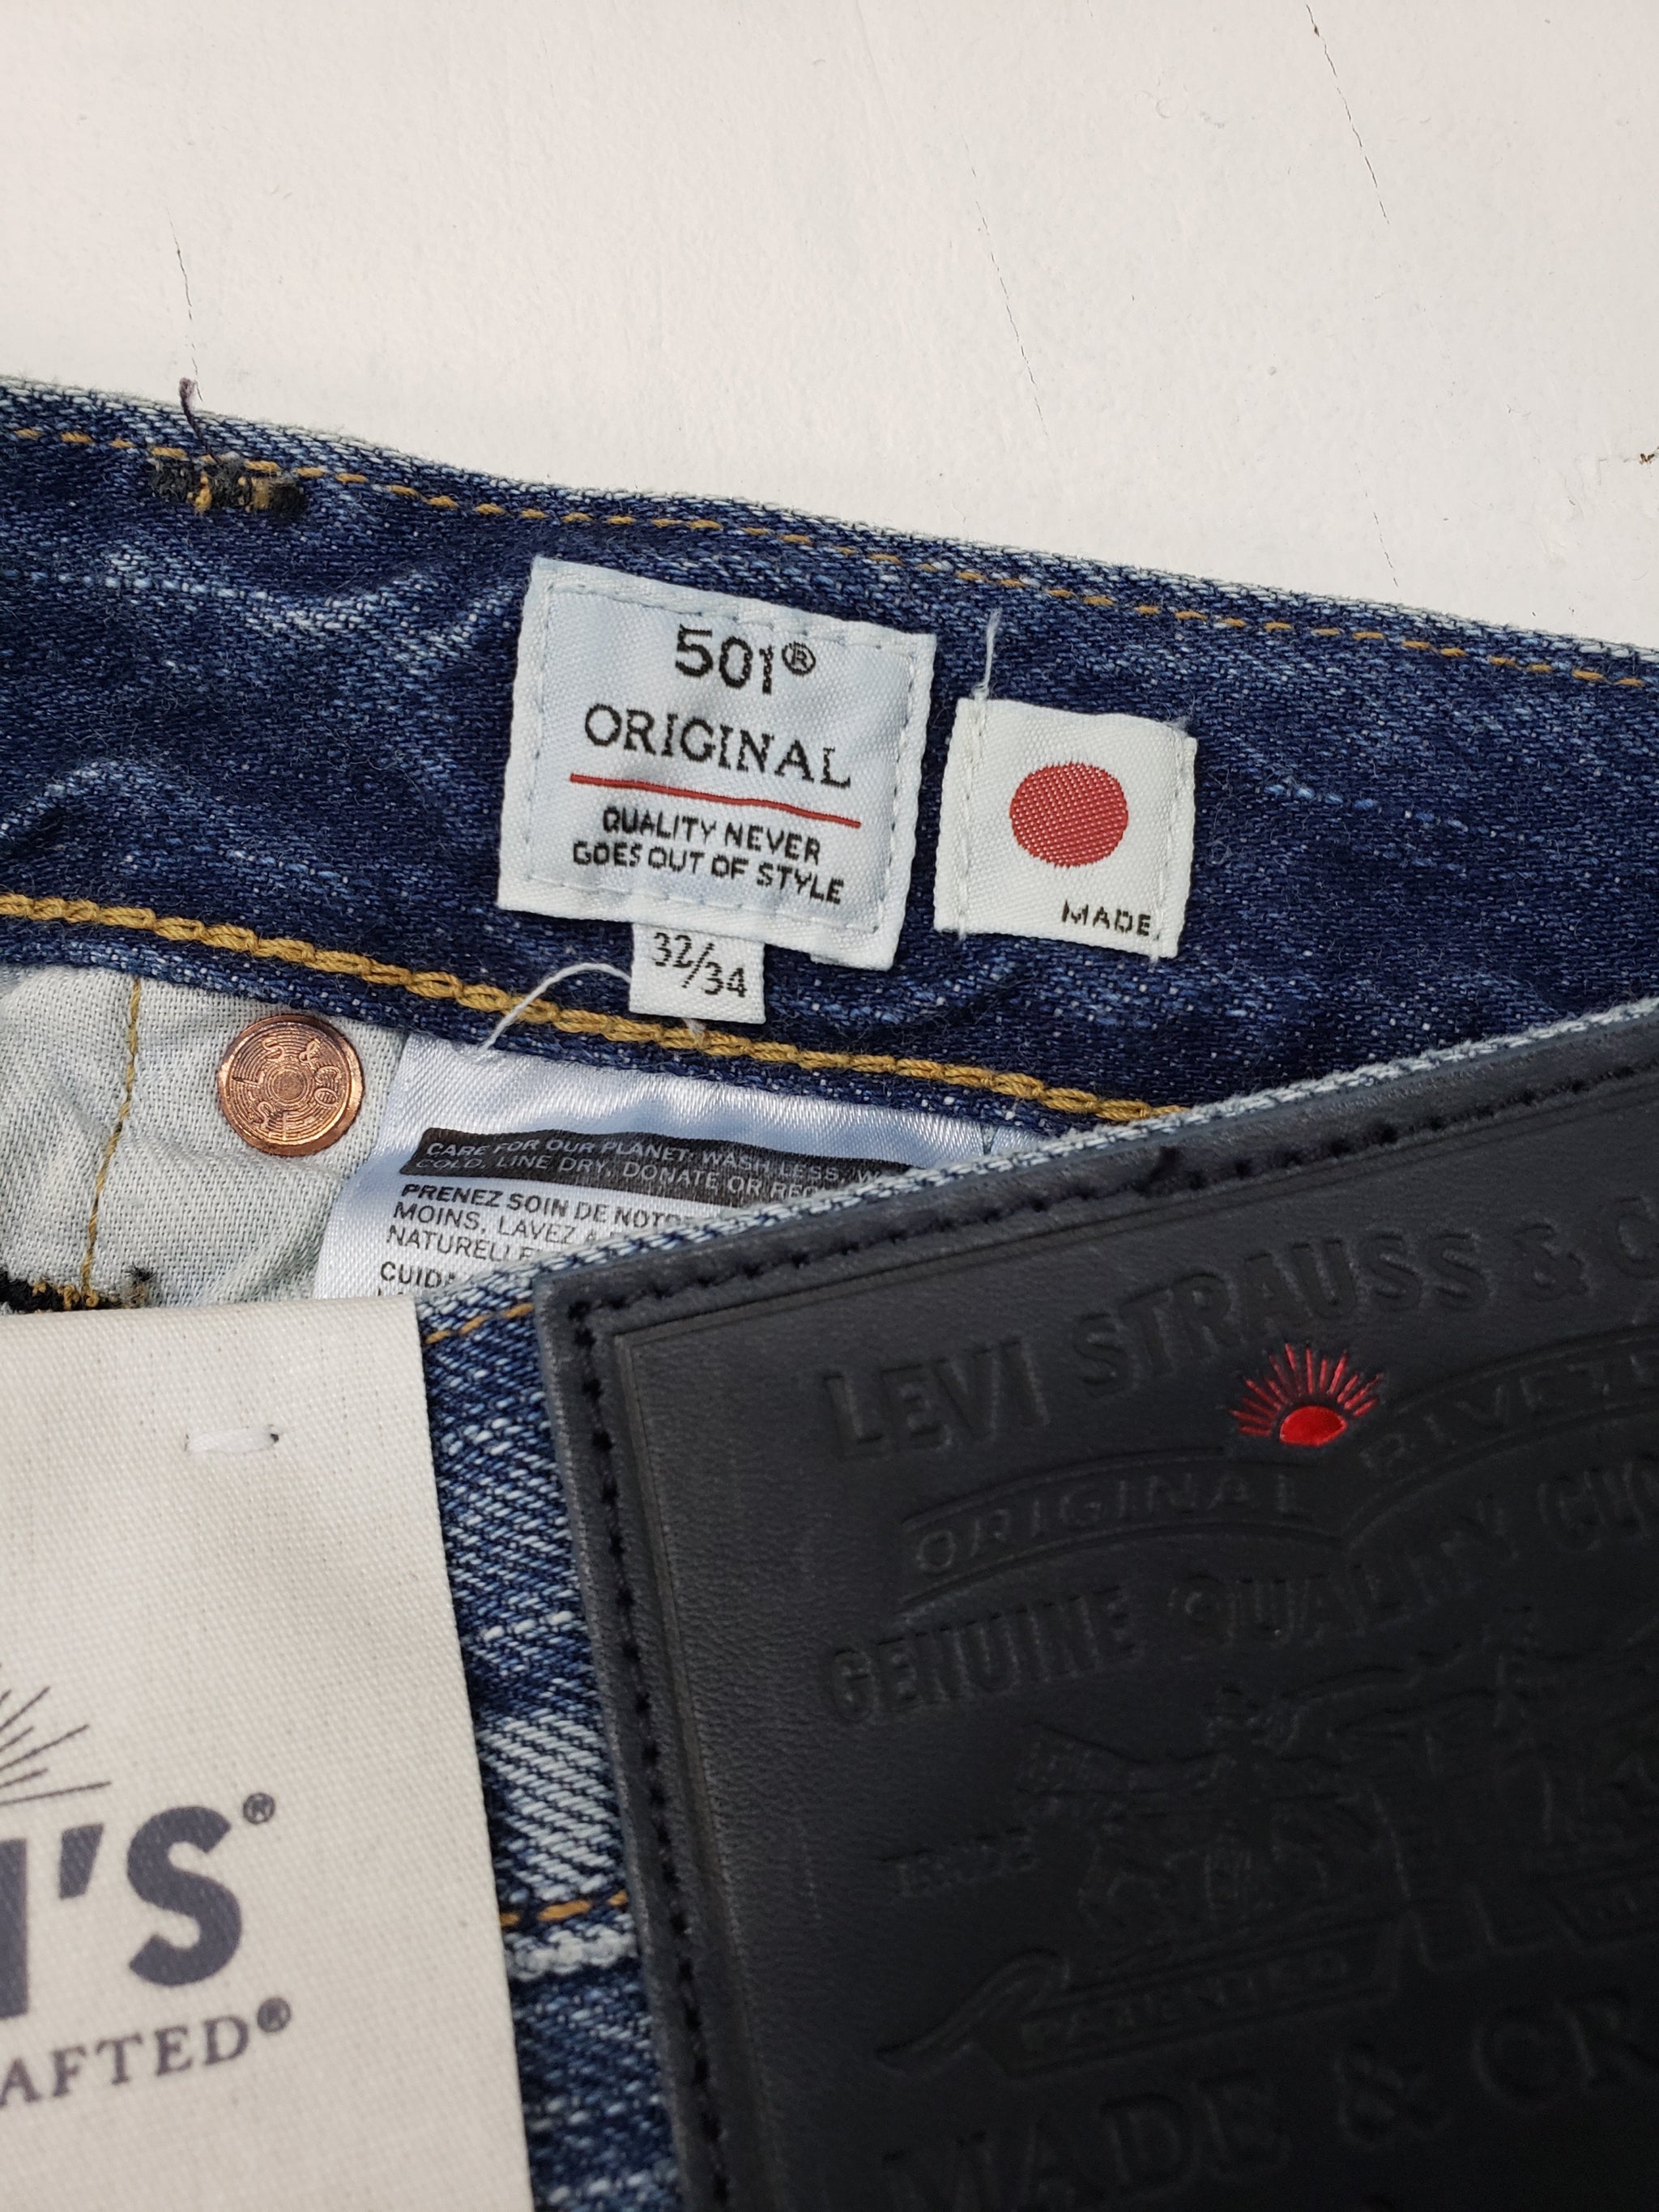 støvle dygtige Mirakuløs Levi's made & crafted Made in Japan 501 trashed - Mildblend Supply Co